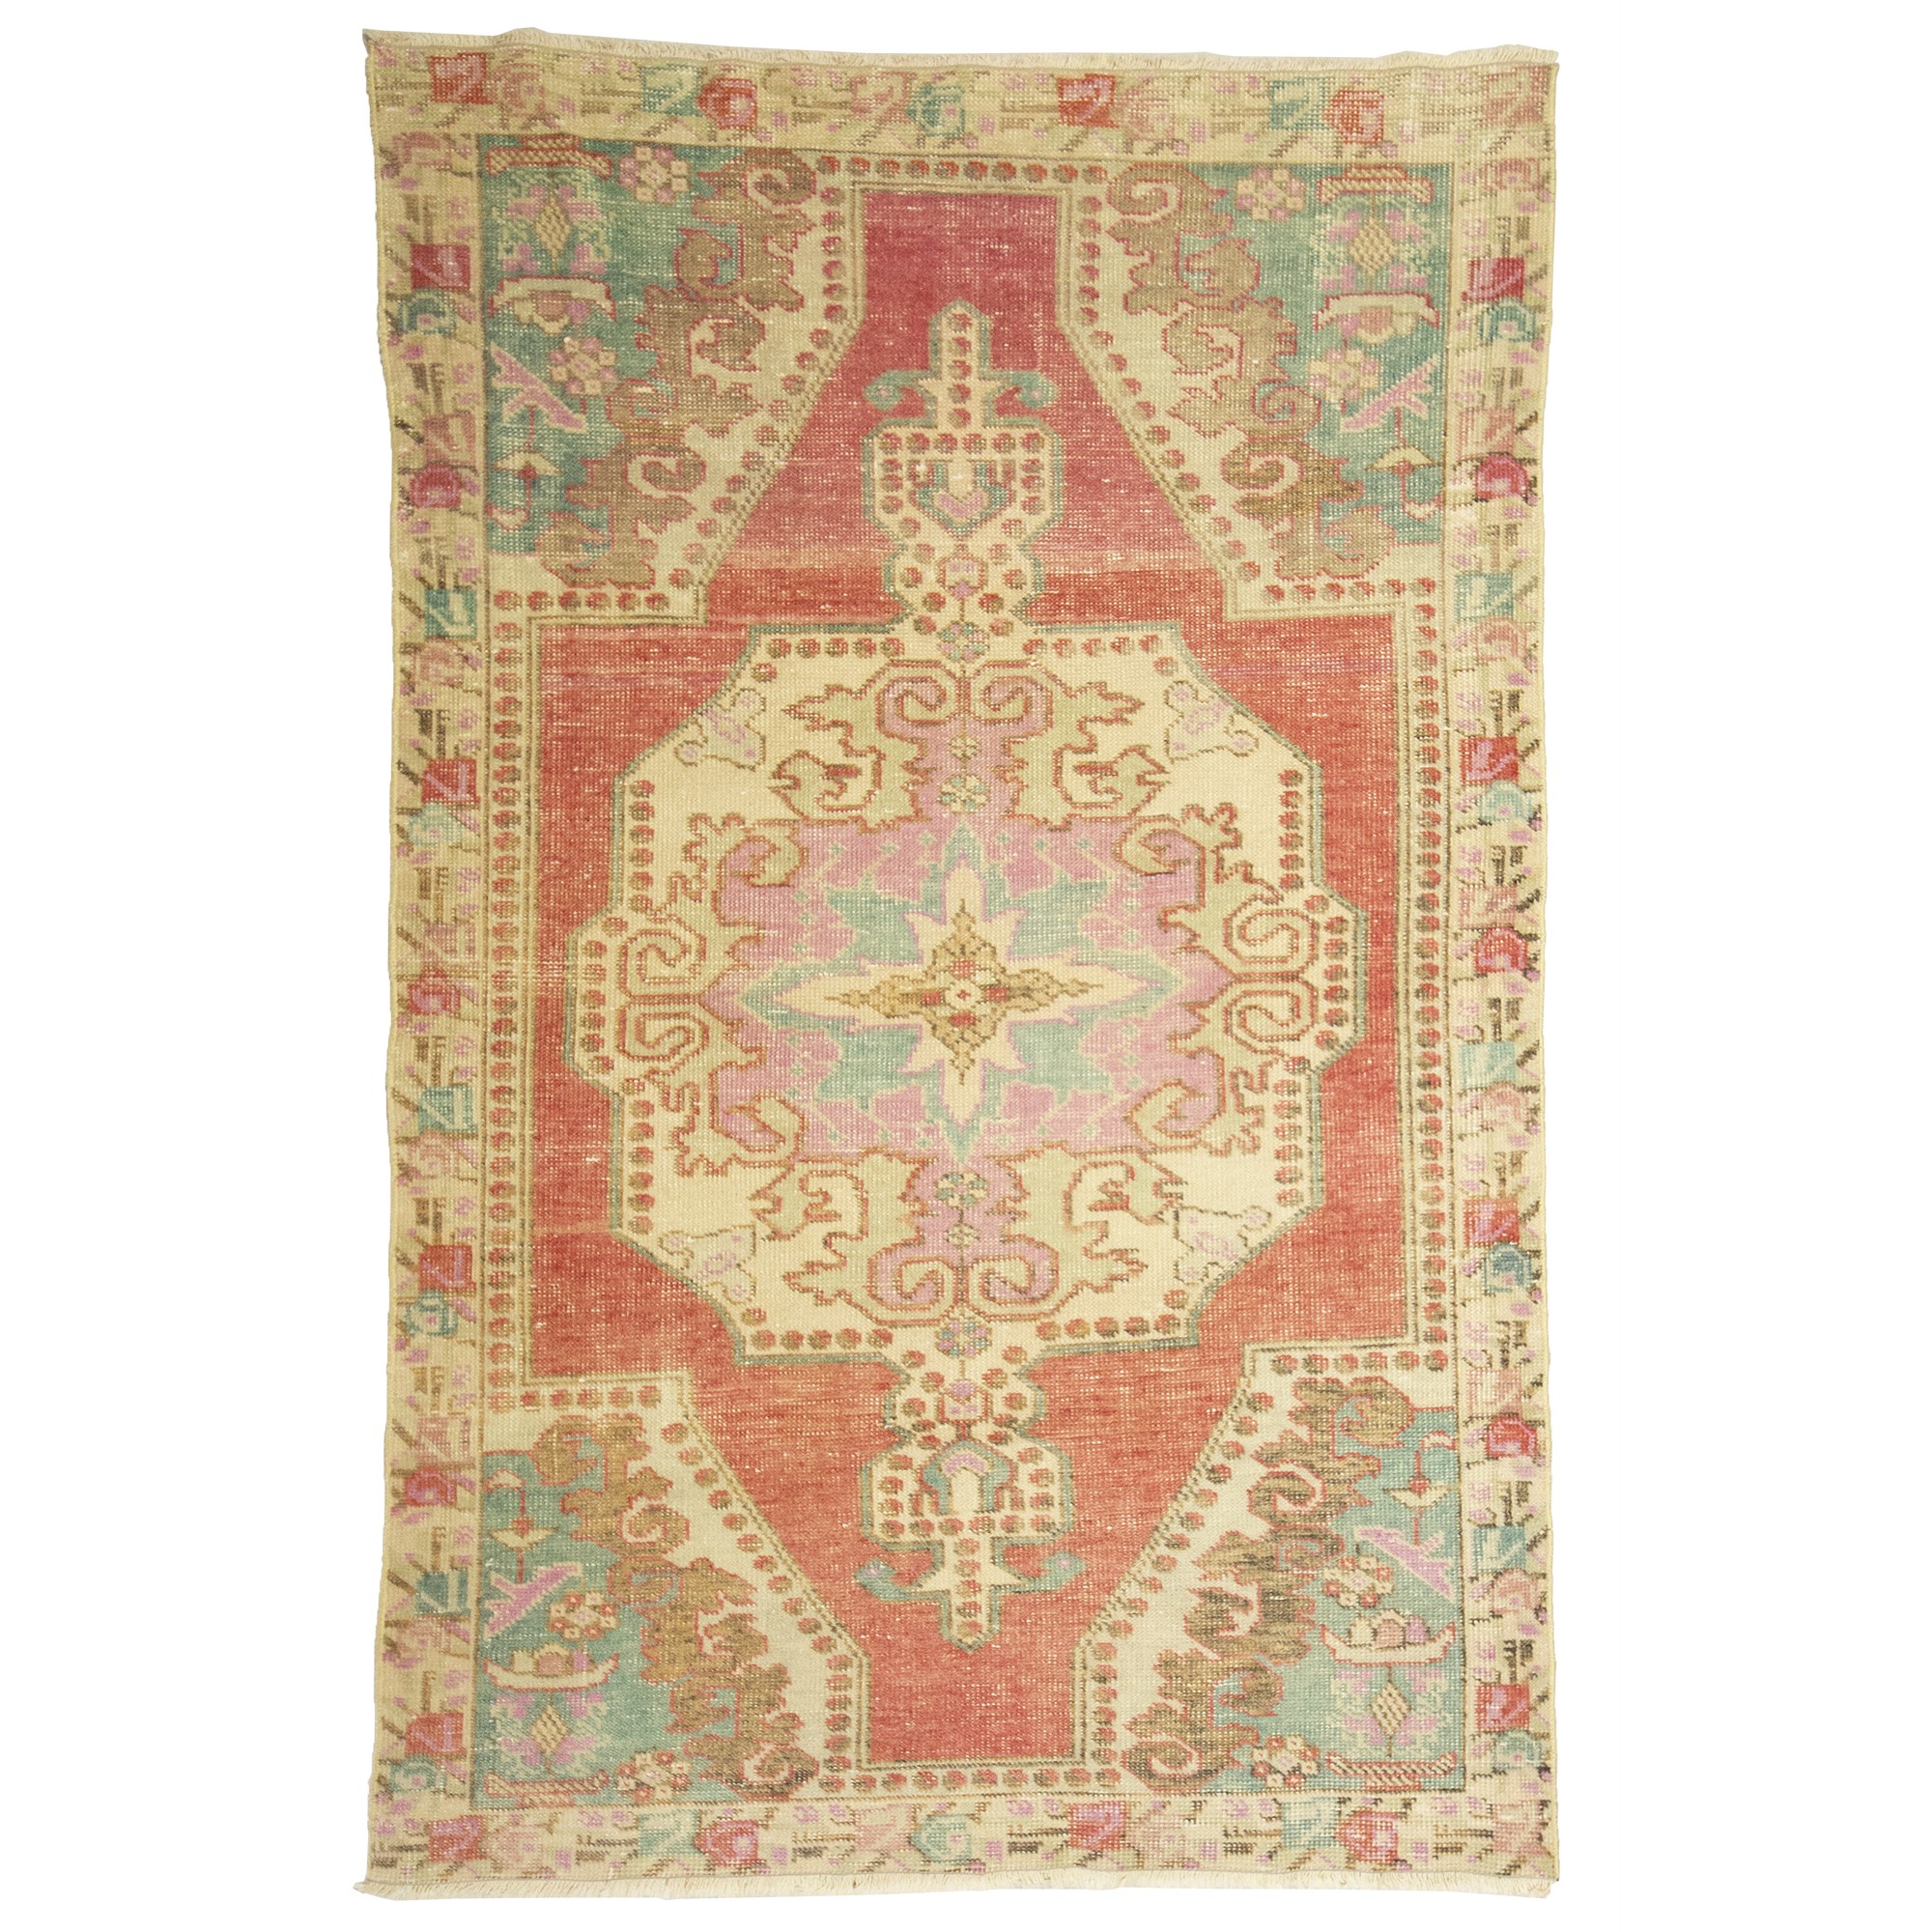 3536  127,208 - Turkish Carpet Rug 